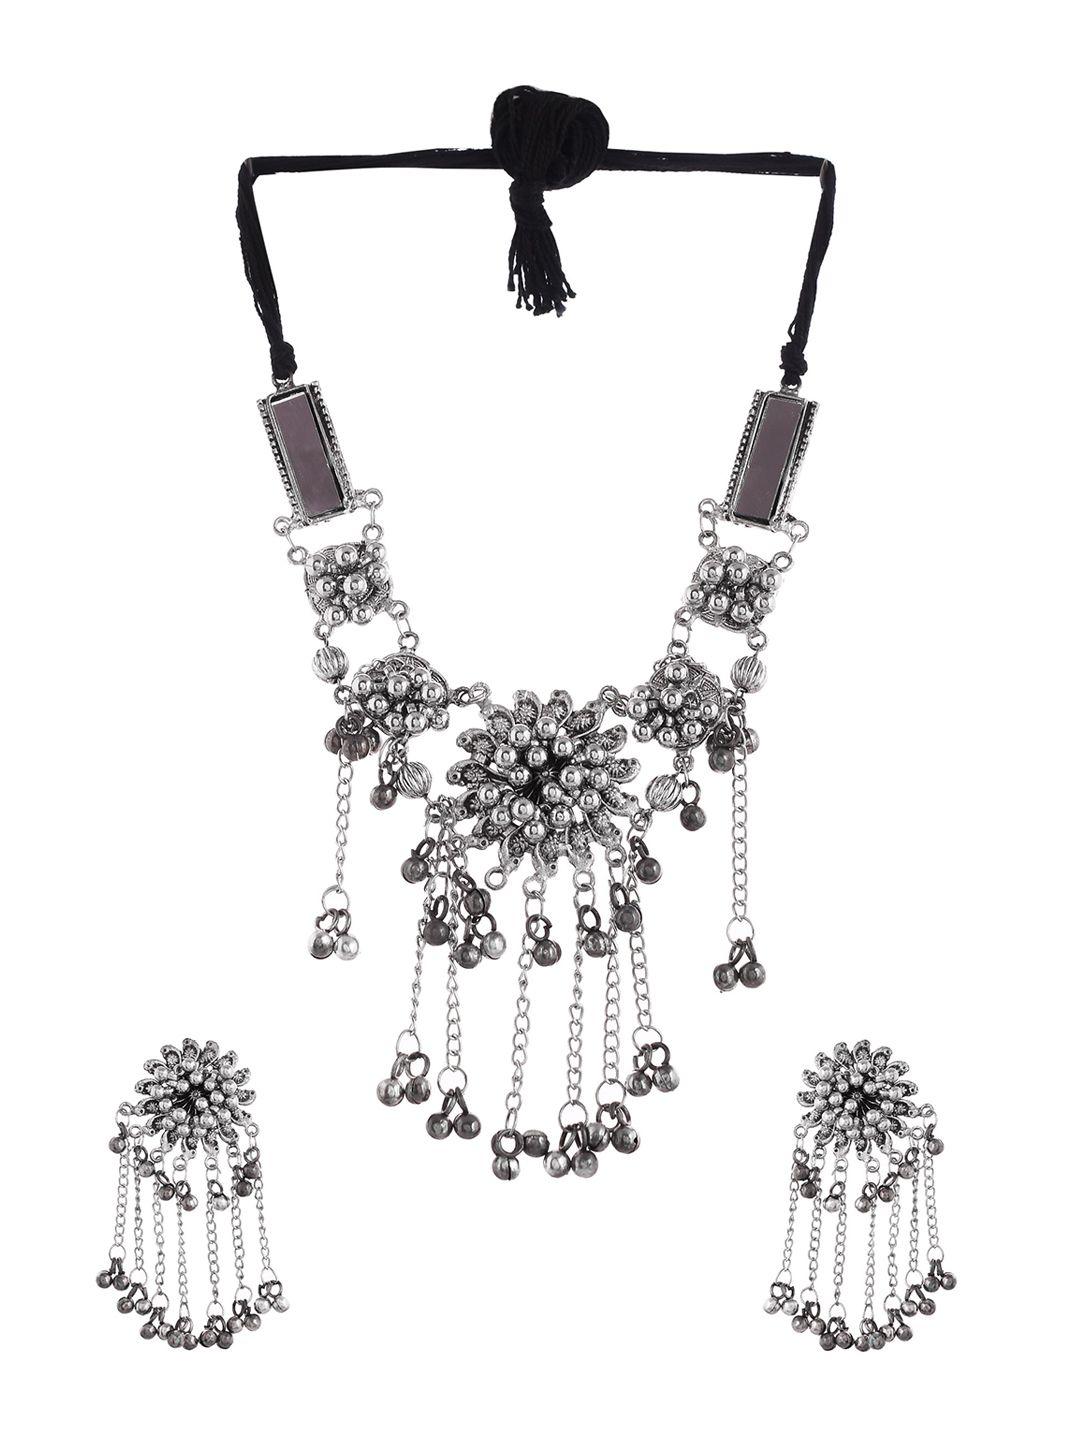 shoshaa oxidized silver-plated jewellery set